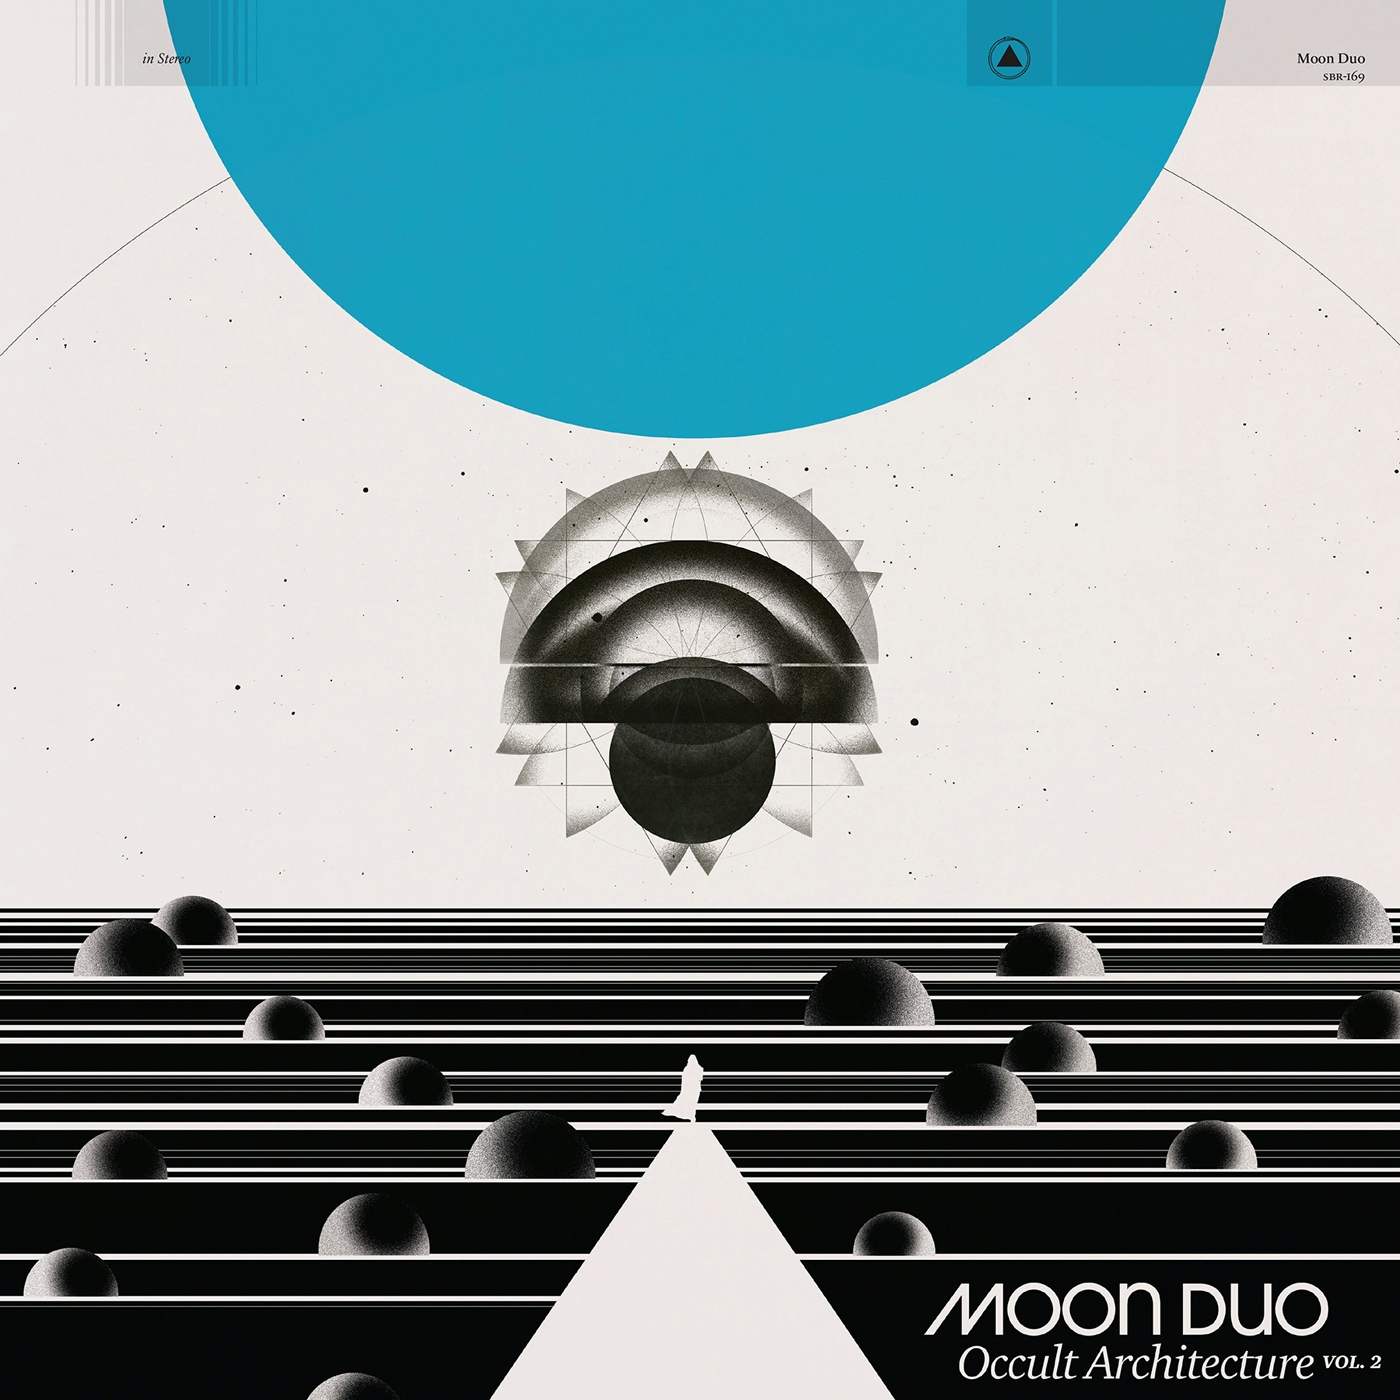 Album artwork for Album artwork for Occult Architecture Vol 2 by Moon Duo by Occult Architecture Vol 2 - Moon Duo